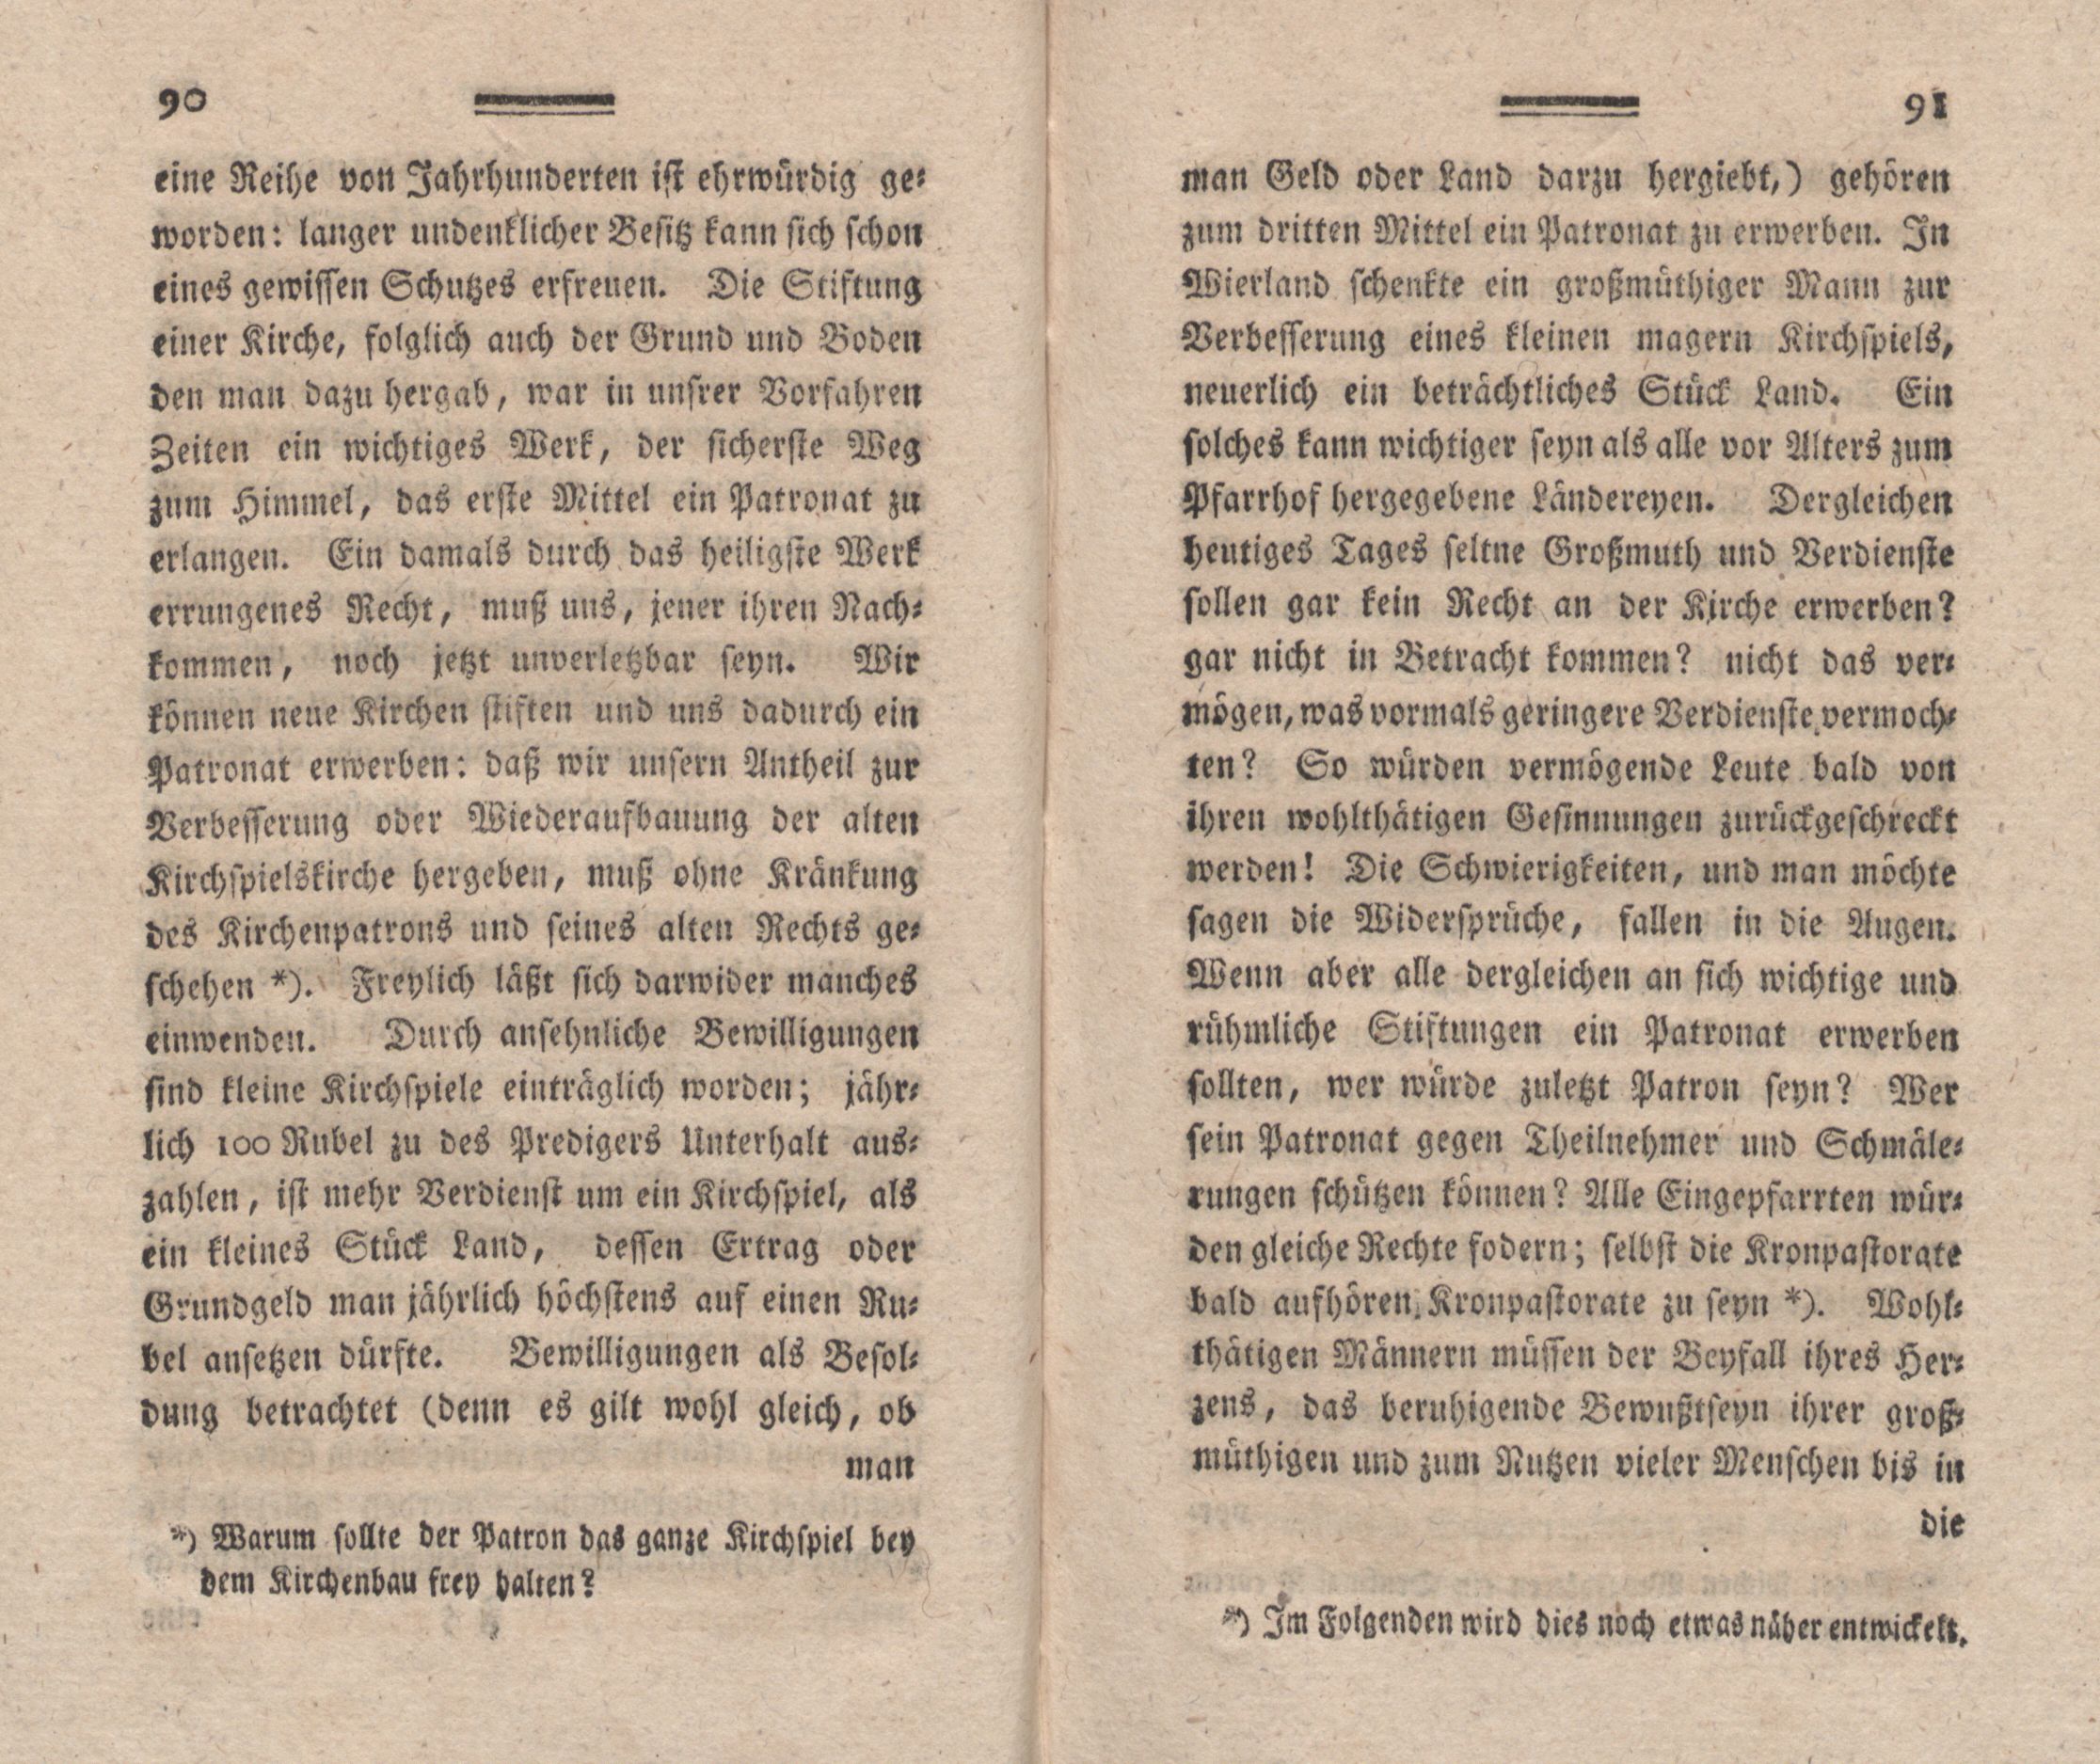 Nordische Miscellaneen [02] (1781) | 46. (90-91) Main body of text